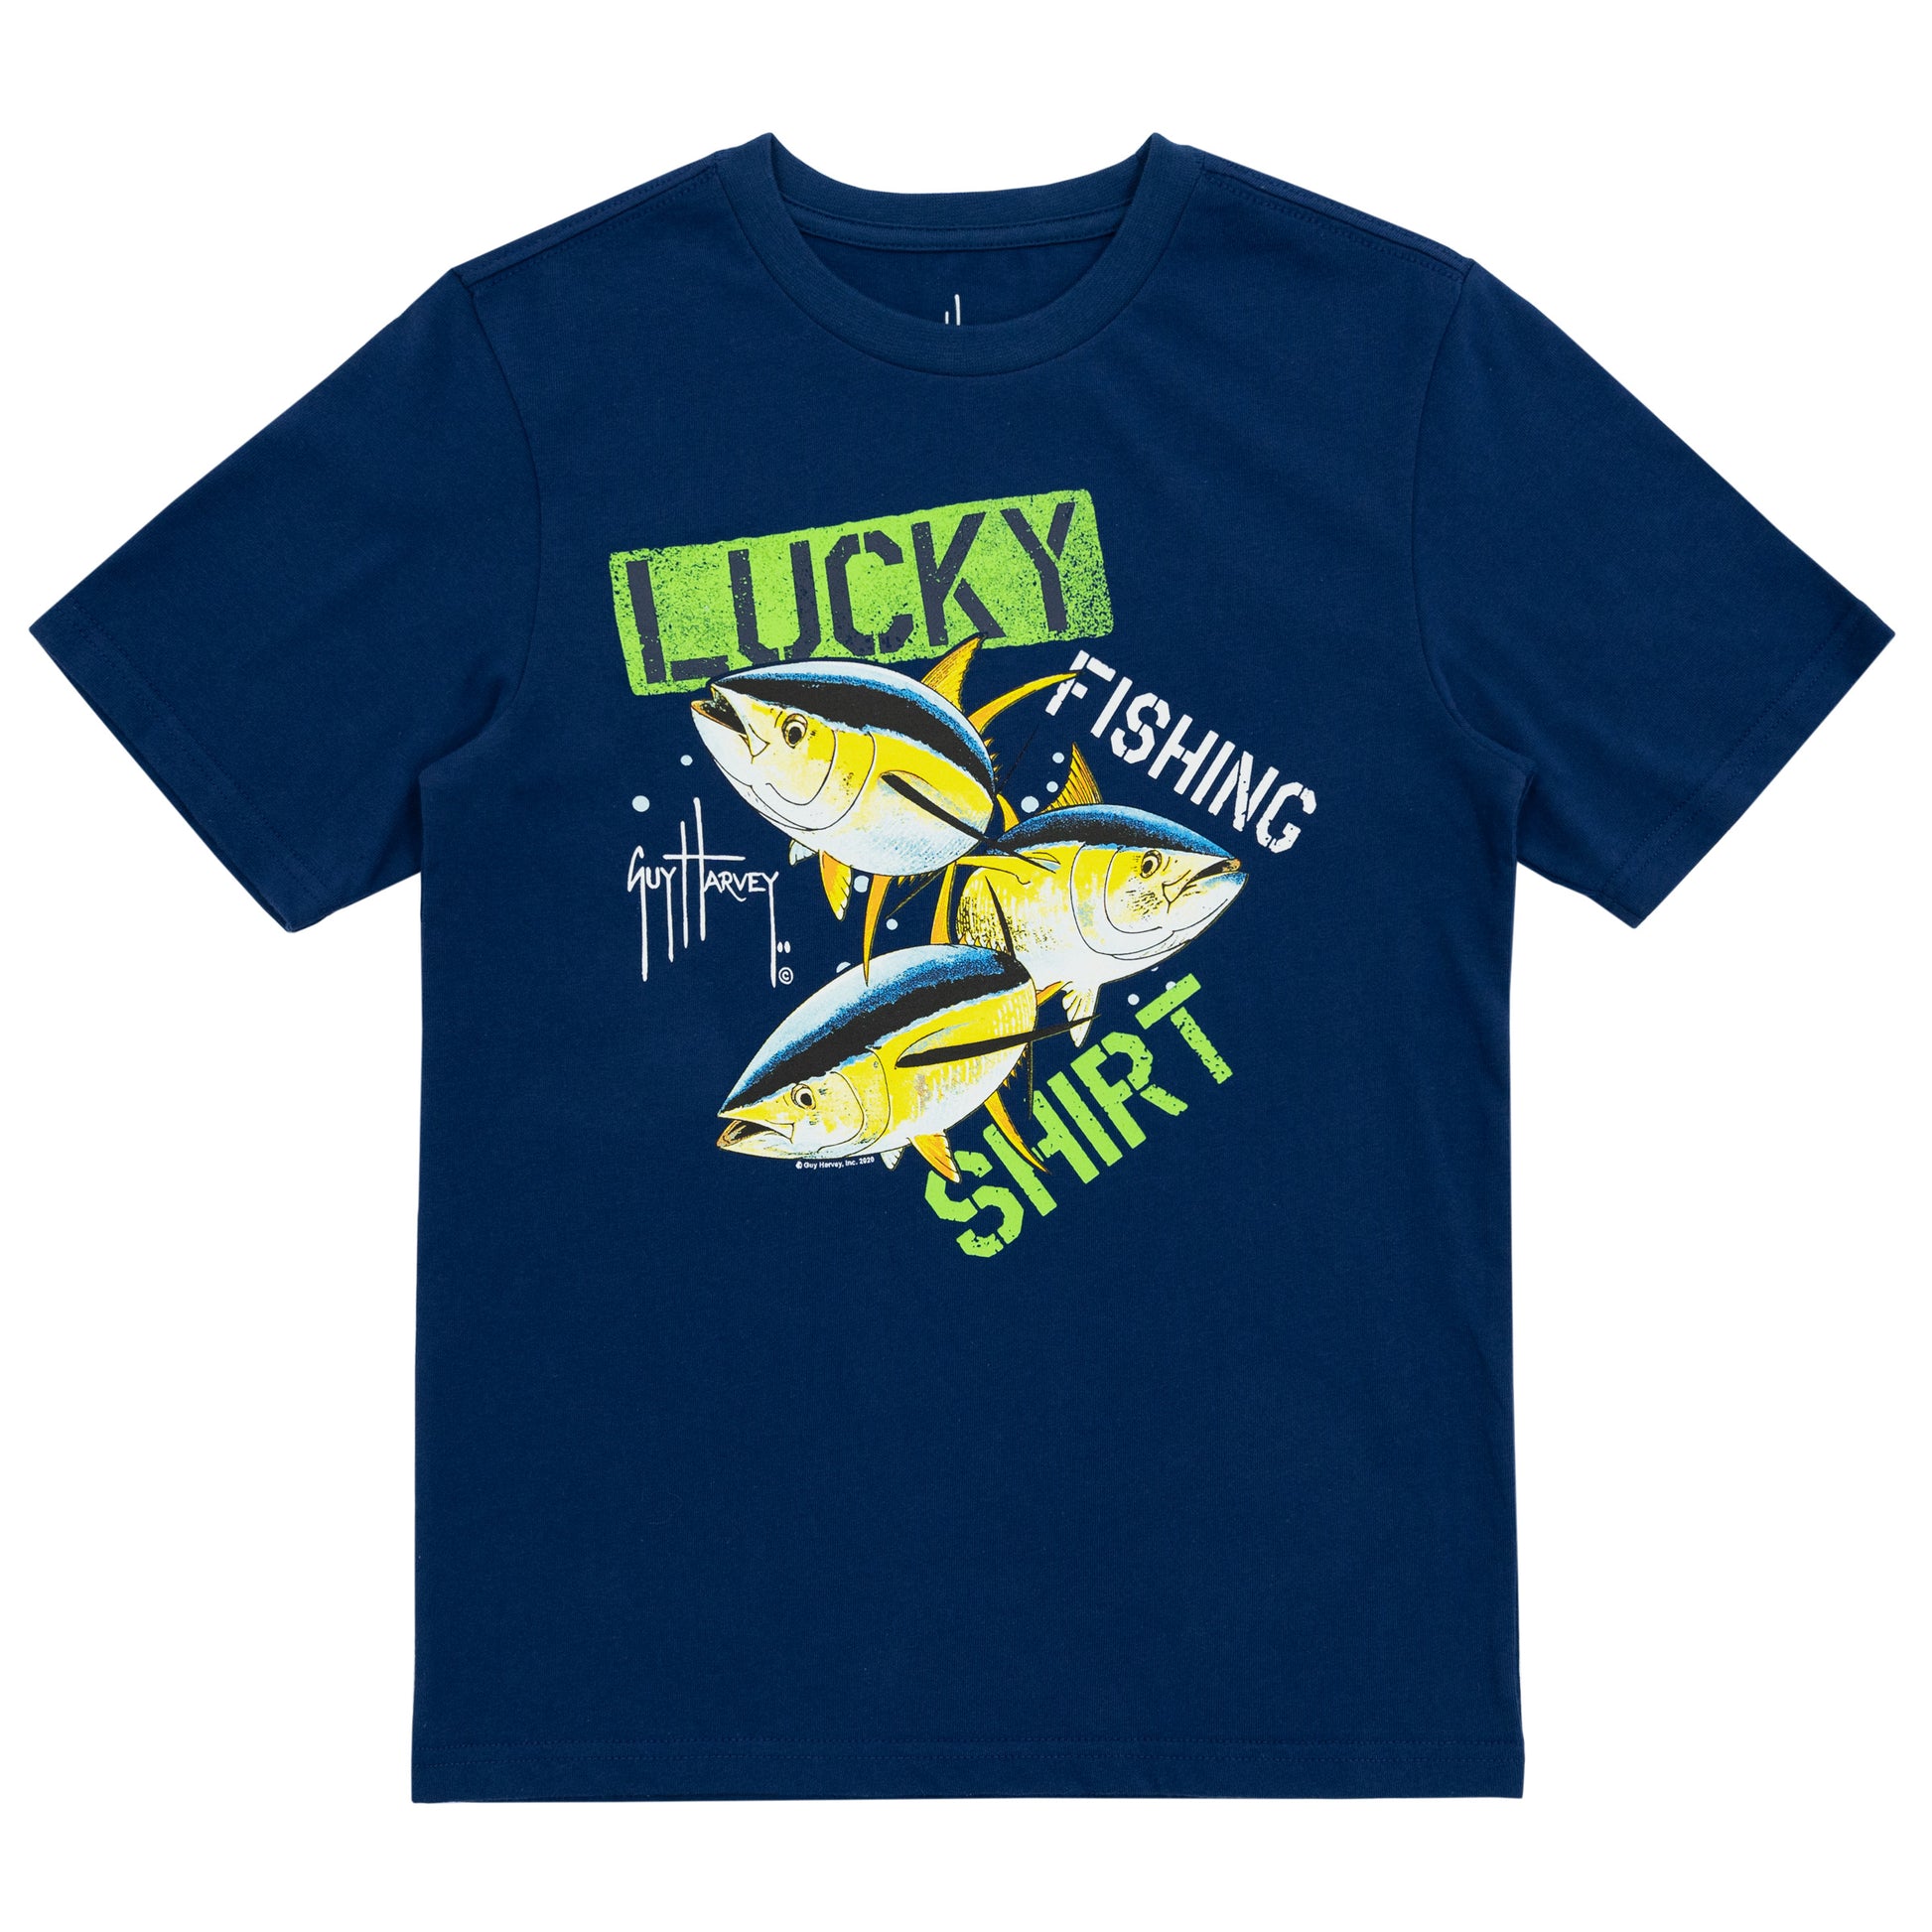 Lucky Fishing Shirt Do Not Wash Funny T-Shirt' Kids' Sport T-Shirt